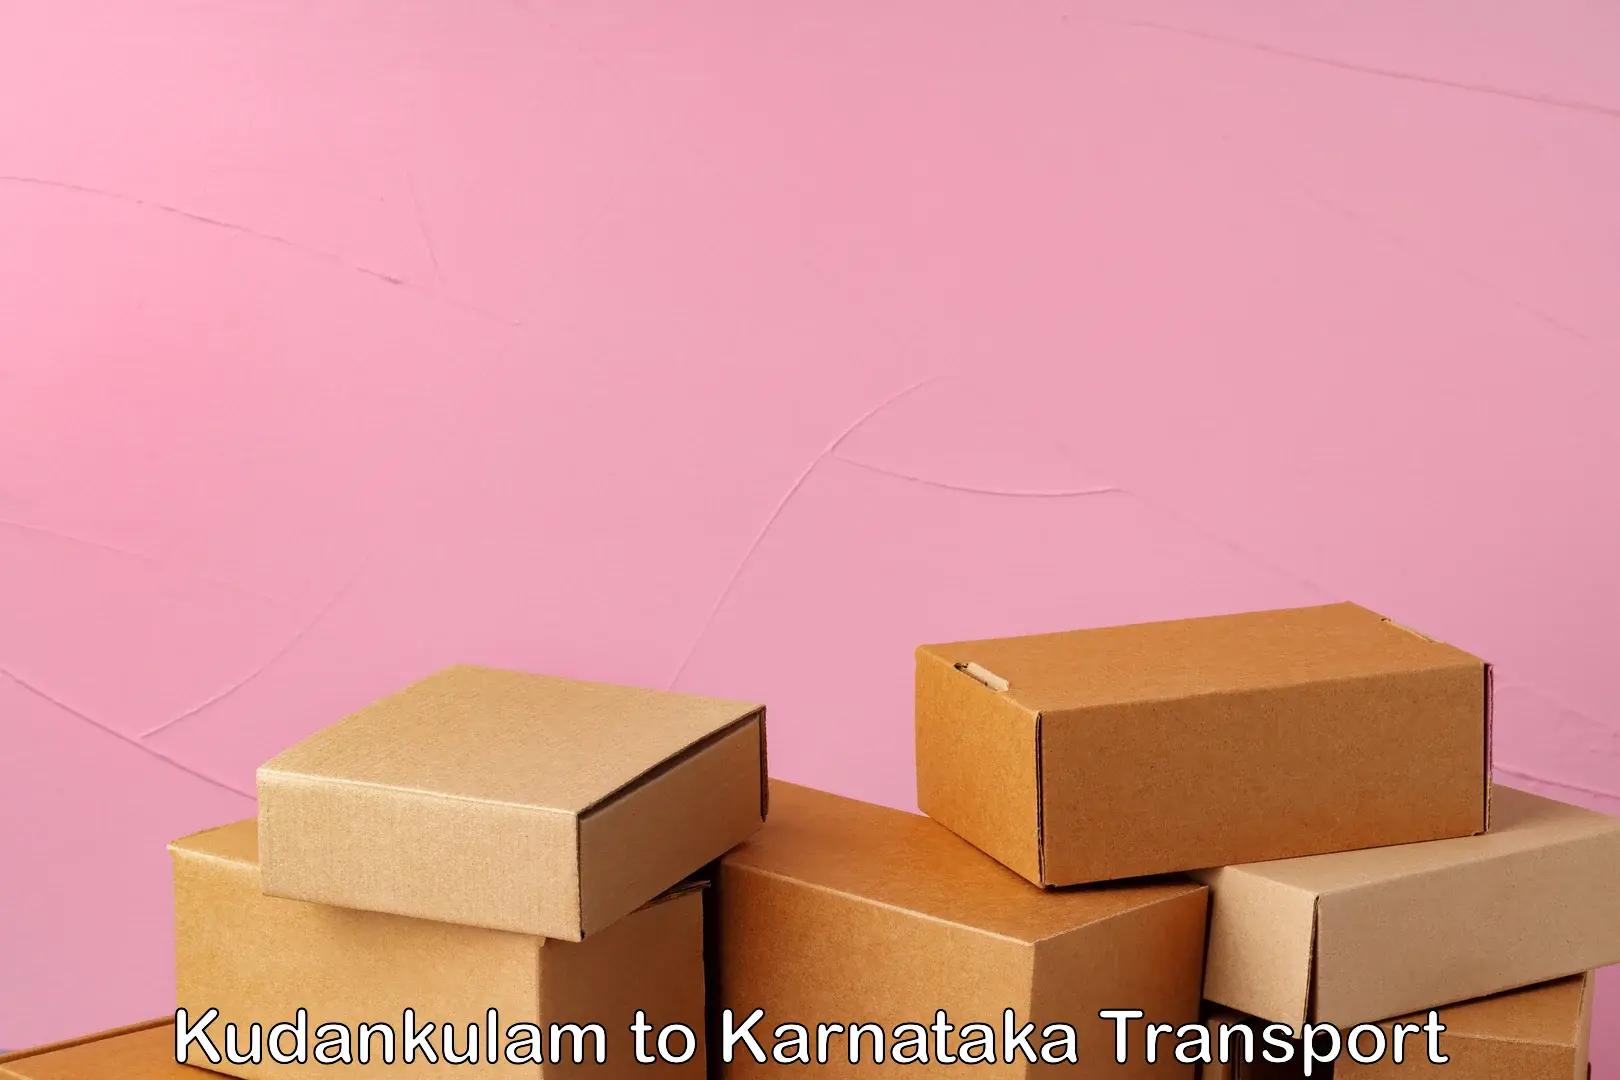 Furniture transport service Kudankulam to Karwar